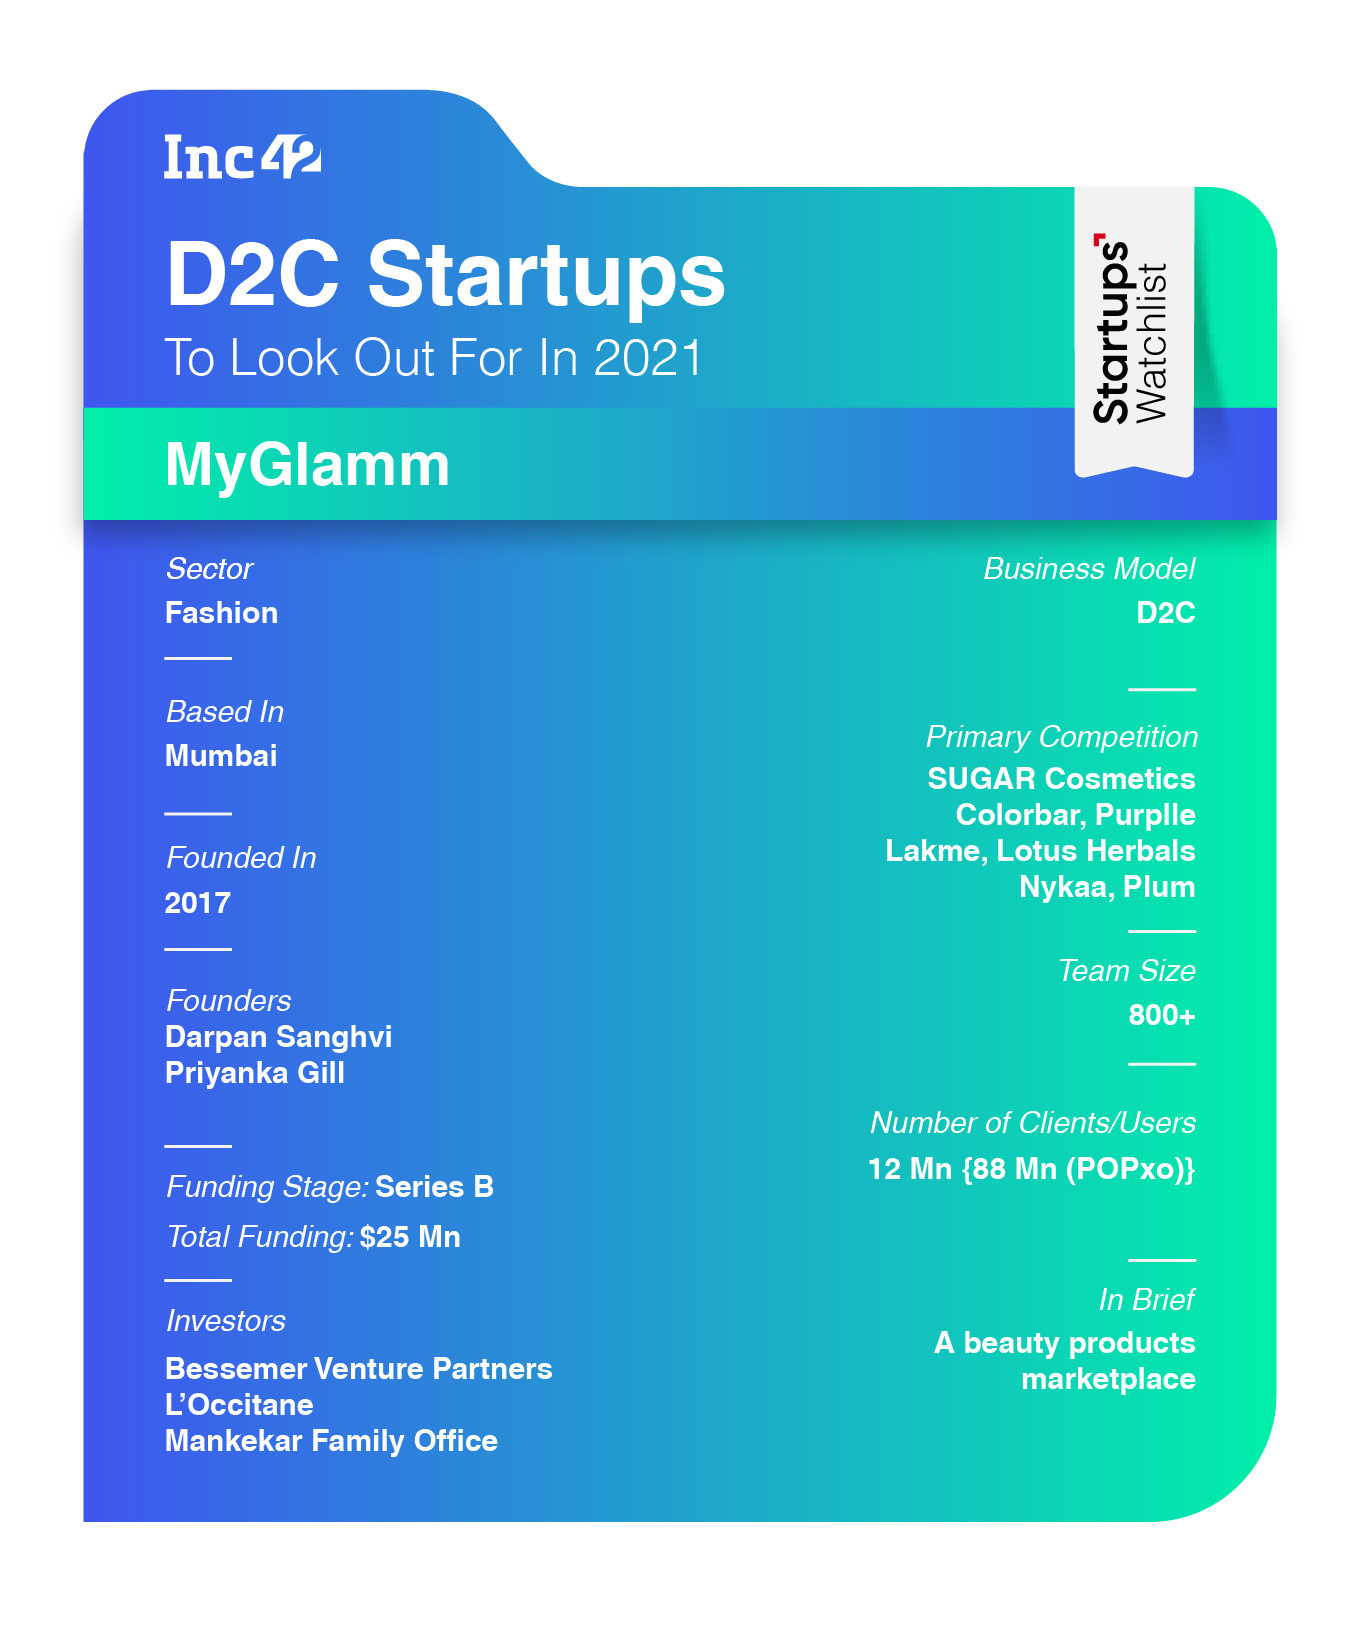 MyGlamm: Leverages Content, Community For D2C Commerce 